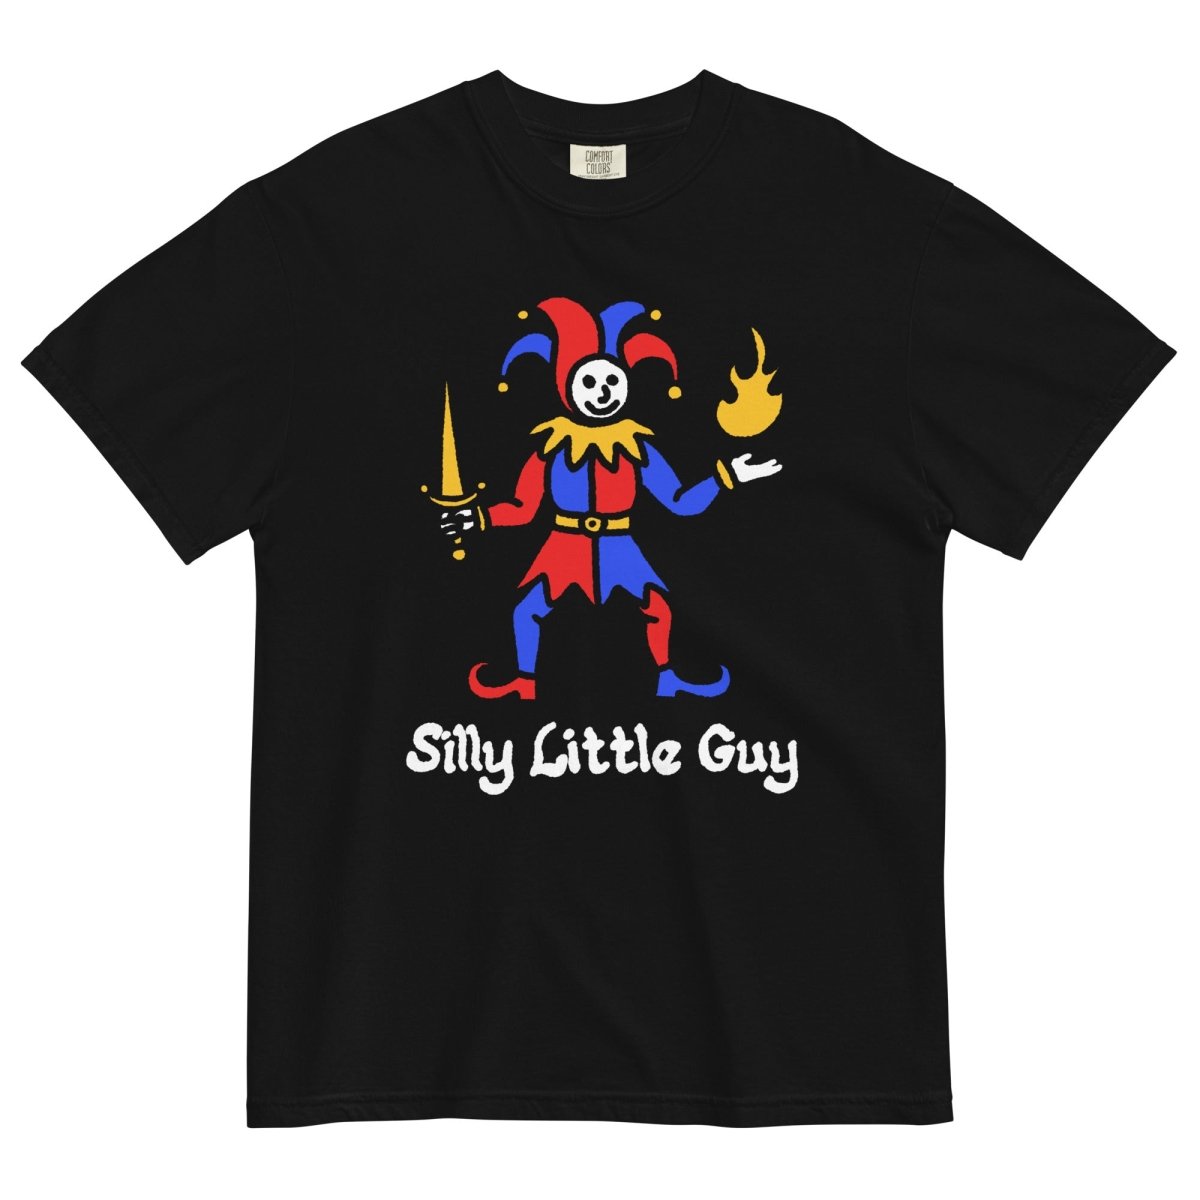 Silly little guy tshirt (black) - Pretty Bad Co.